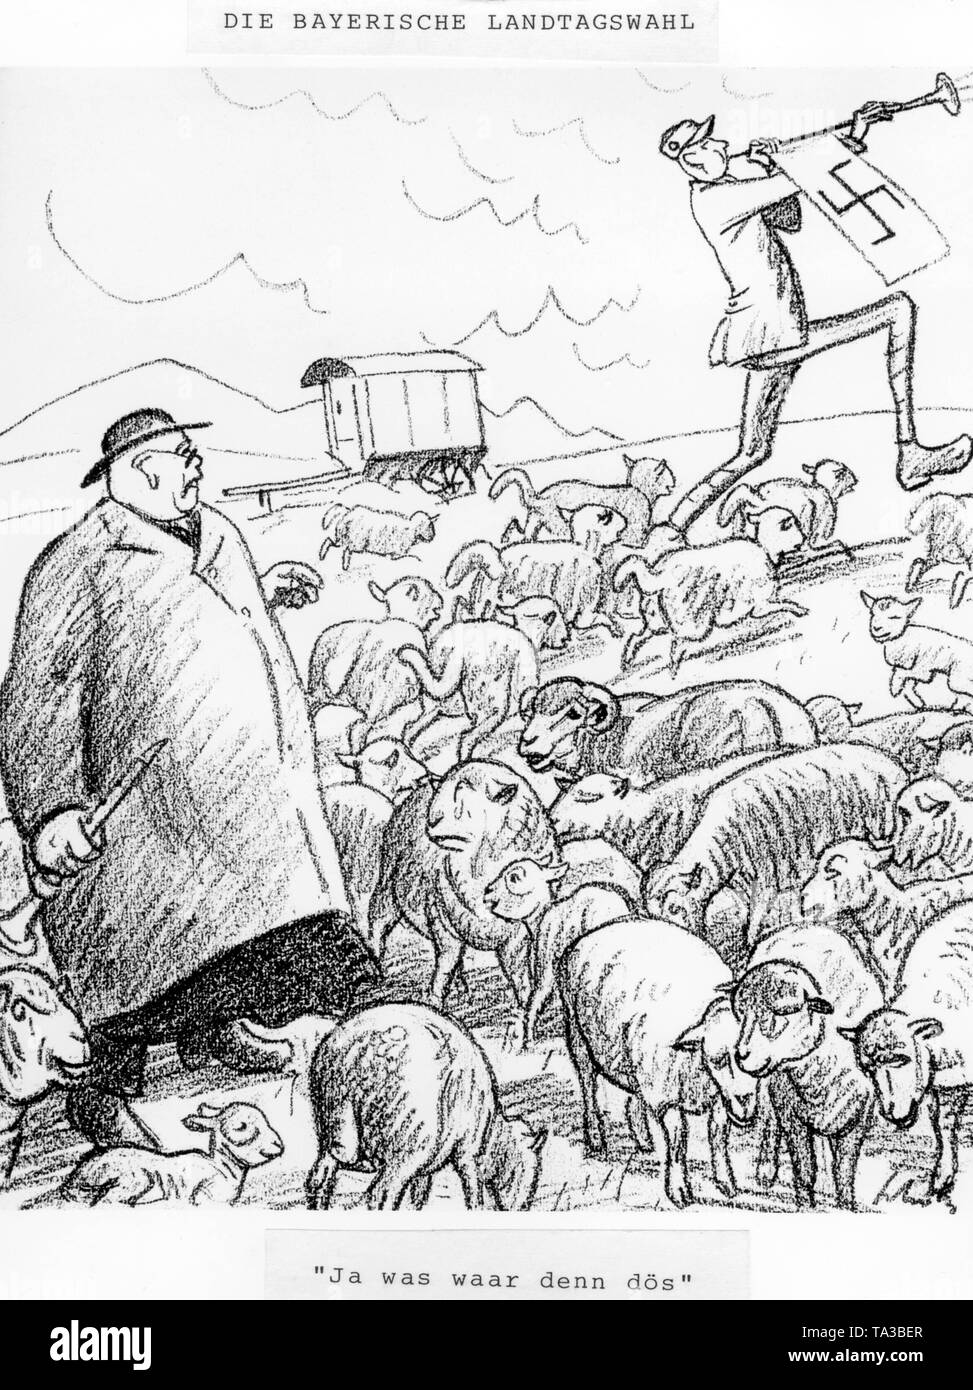 Diese Karikatur war nach der Bayerischen Landtagswahl im Jahr 1924 in der Zeitschrift implicissimus' veröffentlicht. Im Bild: Ein Mann, der an seinem bisher Fromme kleine Schafe sieht von der Bayerischen Volkspartei migrieren auf der Schalmei klingt der Nazis. Unter der Zeichnung die Inschrift (englische Übersetzung): "Was war das überhaupt?' Stockfoto